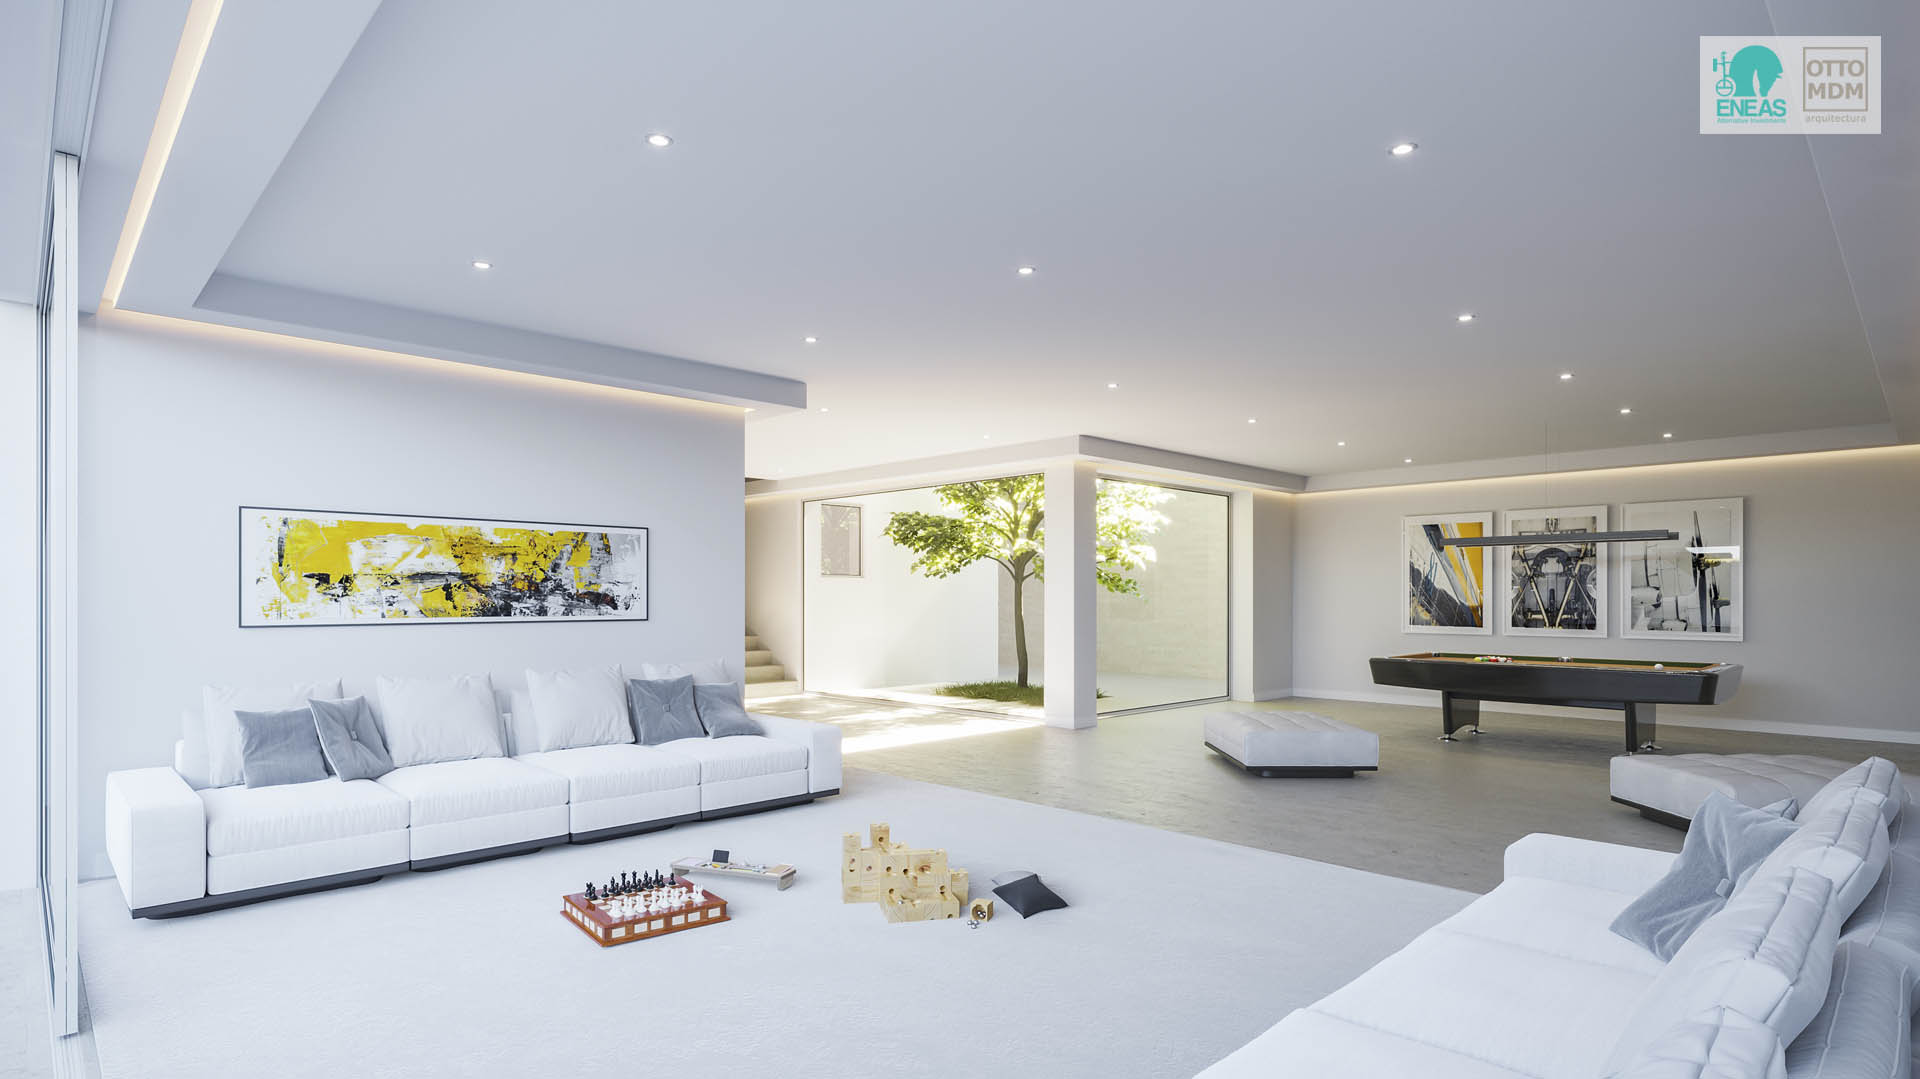 Render 3D del interior de una espectacular vivienda en Madrid